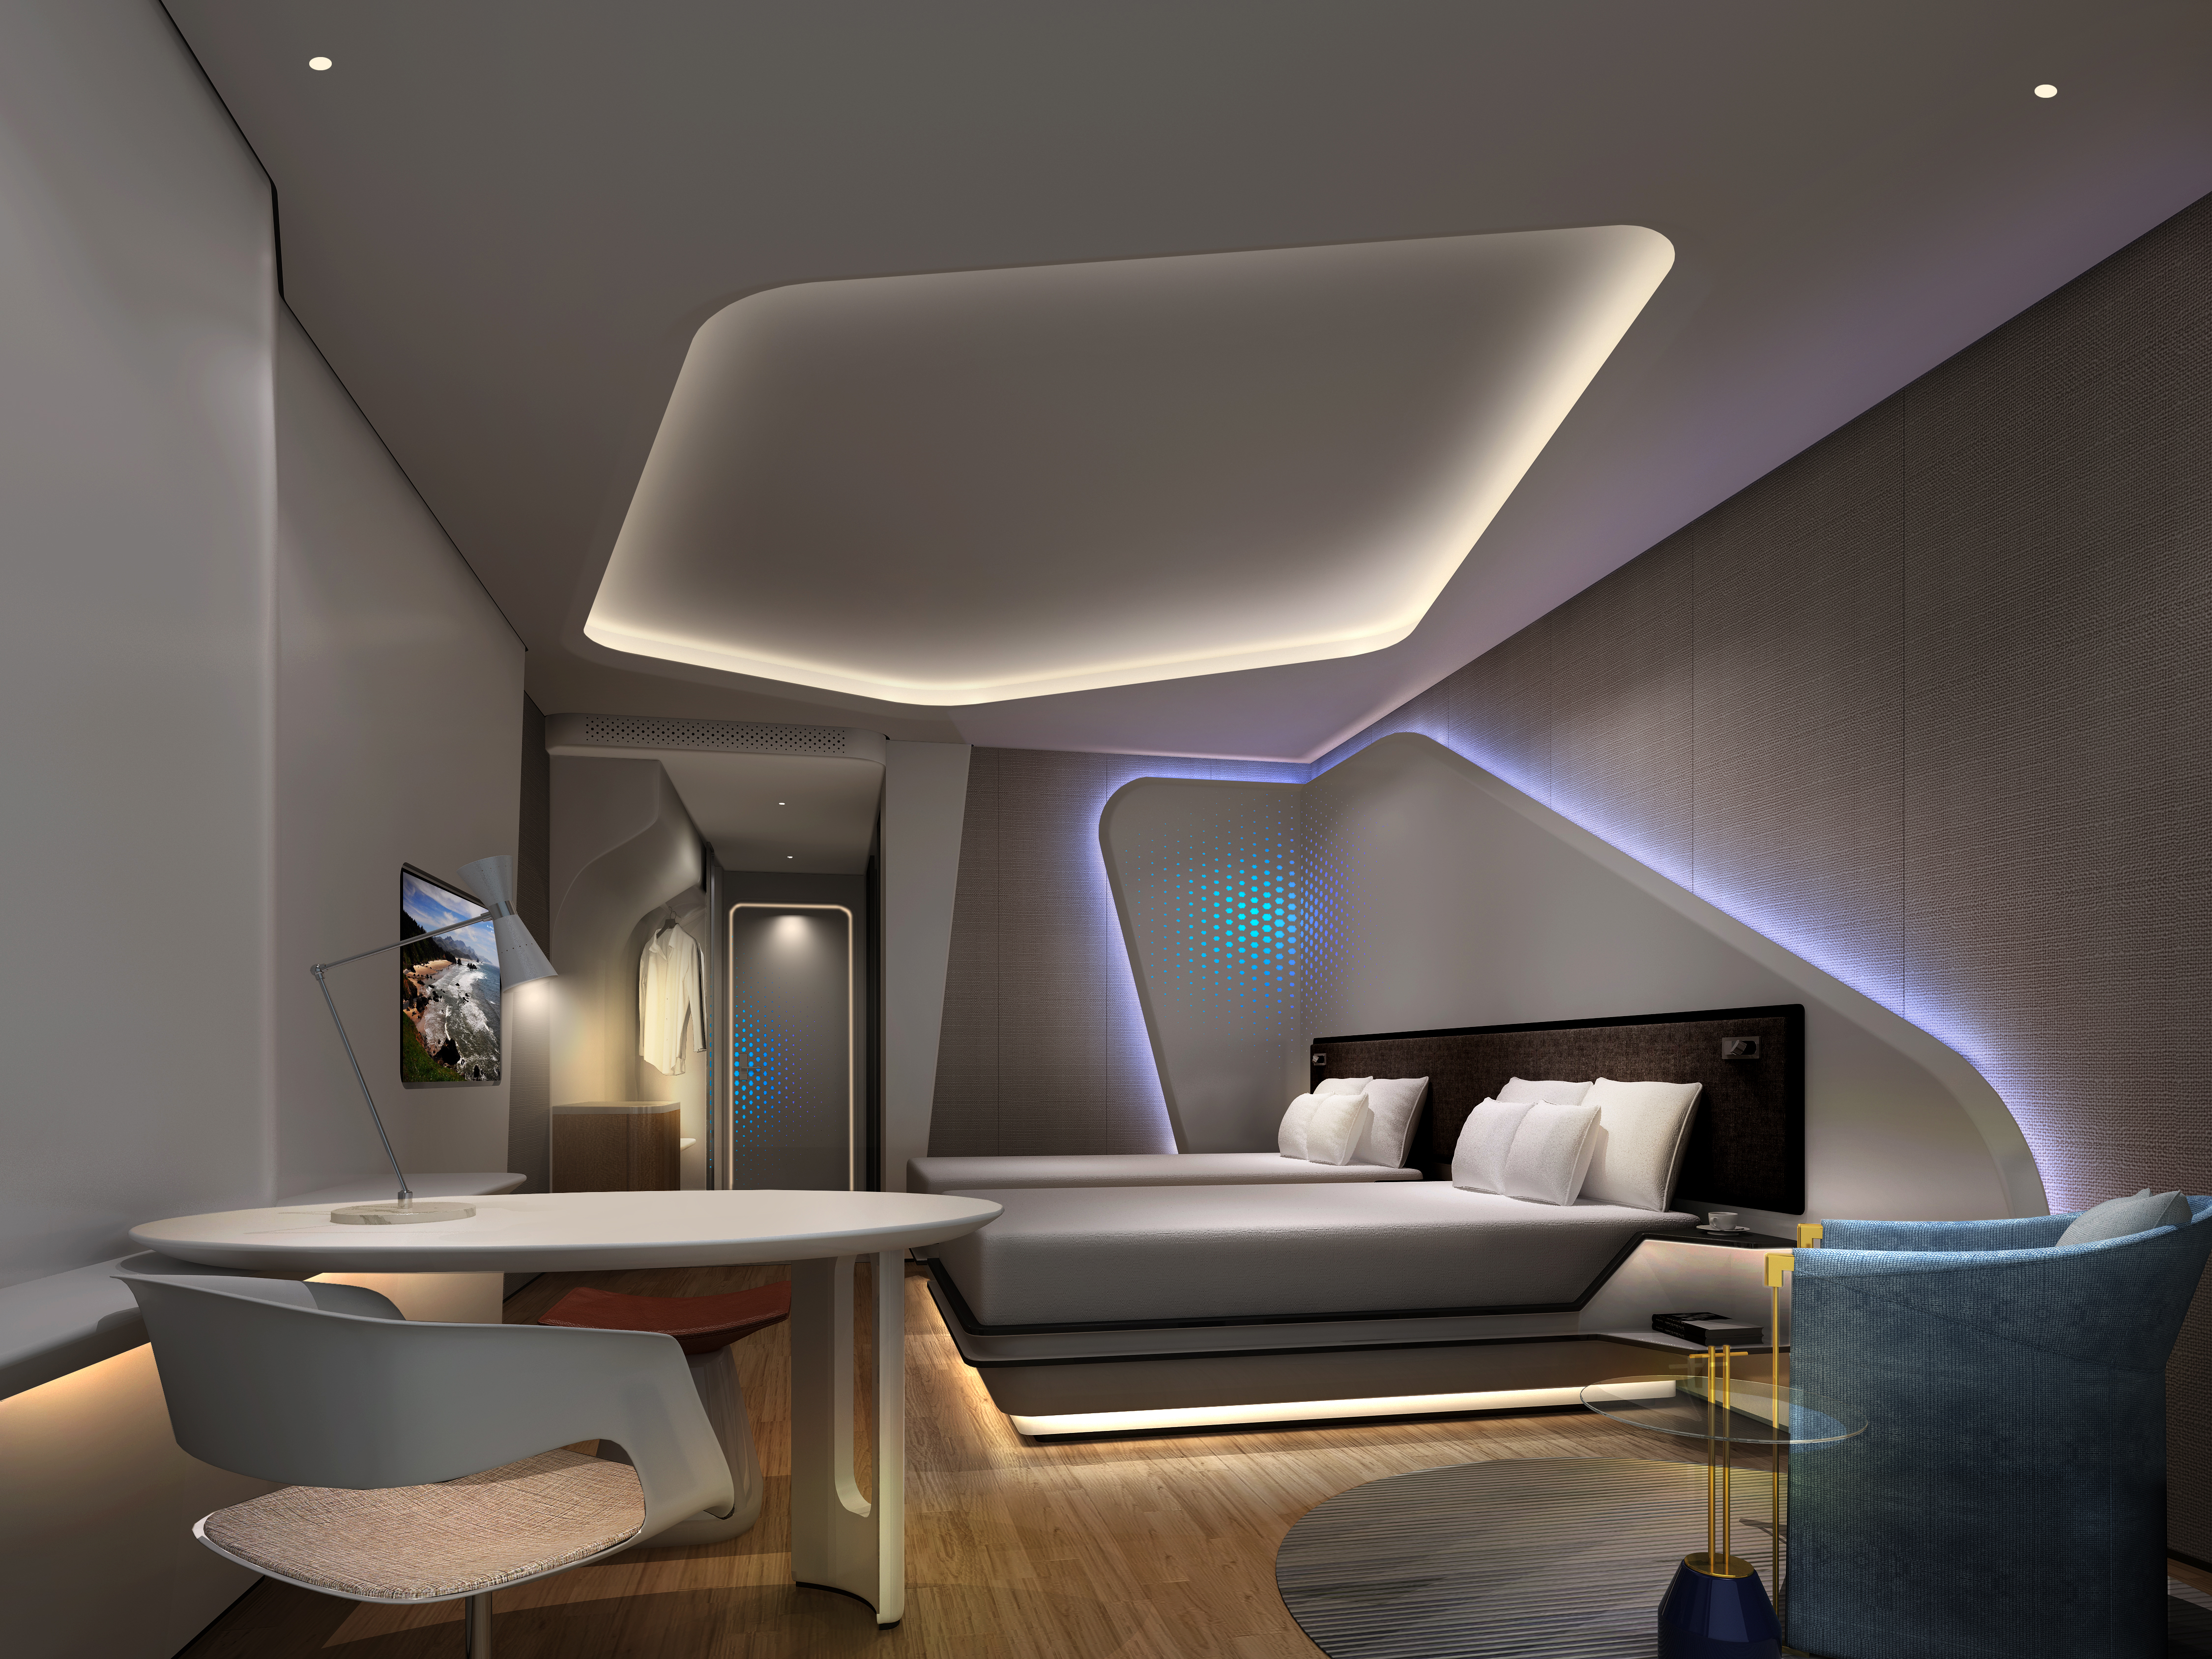 太空式酒店灯光设计阿里未来酒店